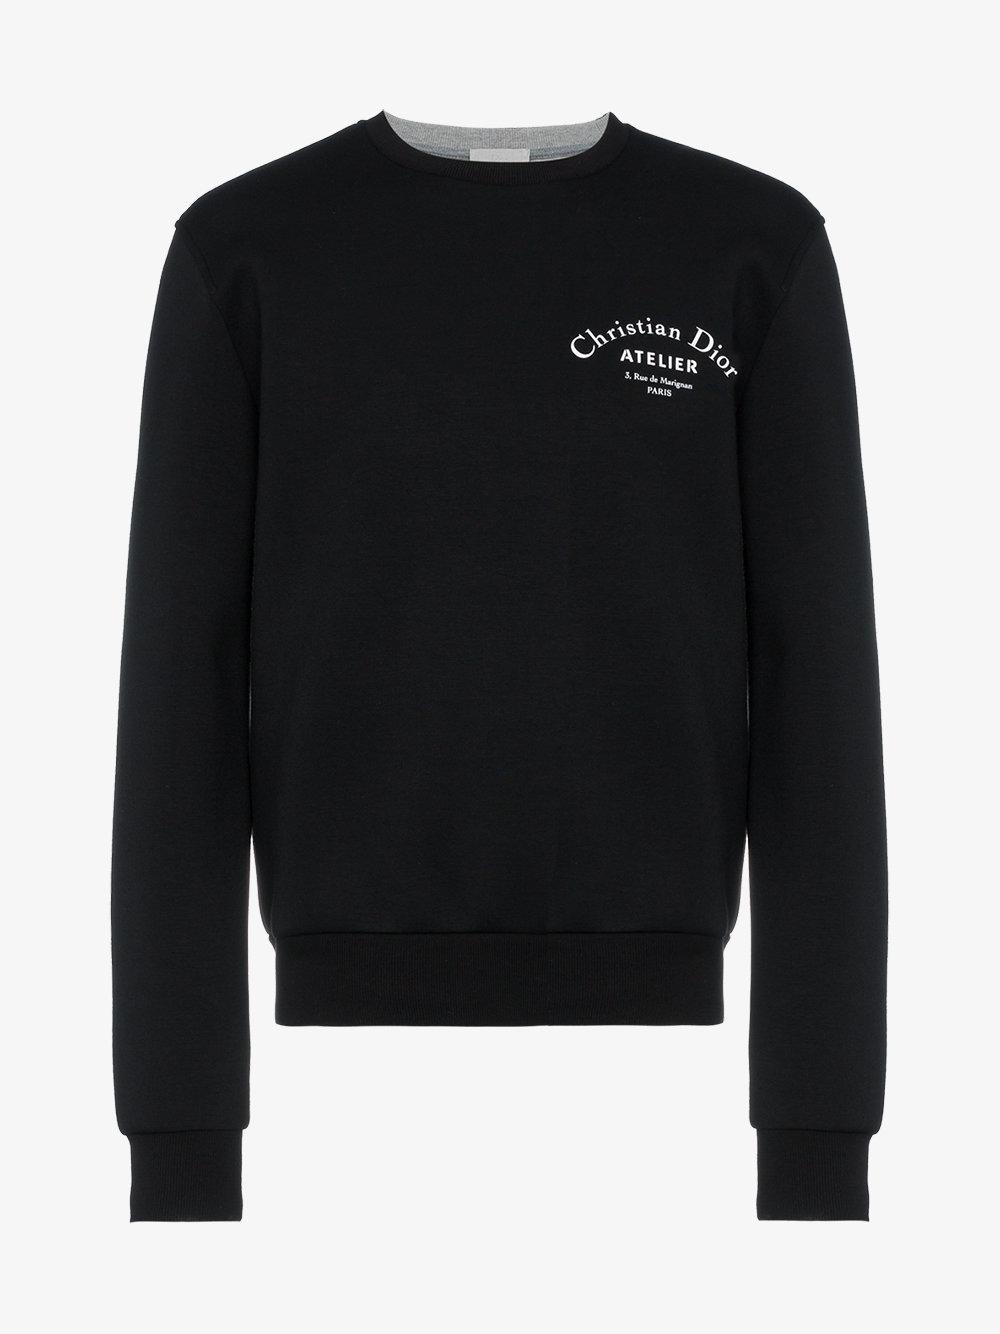 Dior Atelier Logo Print Crew Neck Sweatshirt in Black for Men | Lyst UK